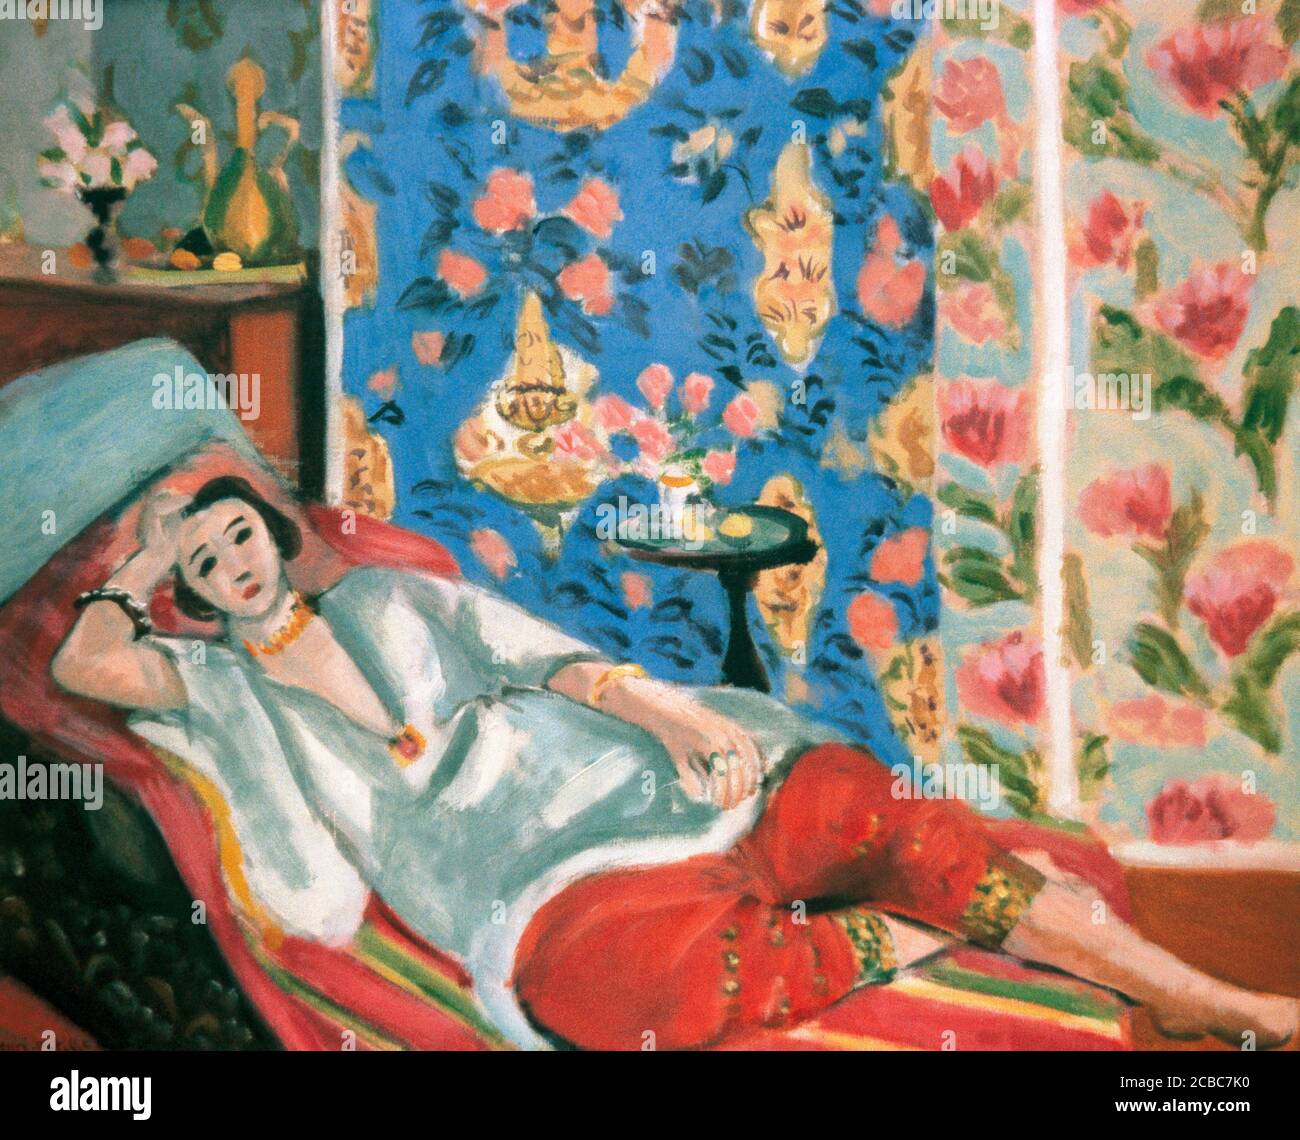 Henri Matisse (1869-1954). Peintre français. Pantalon Odalisque rouge. Env. 1924-1925. Huile sur toile (50 x 61 cm). Musée de l'Orangerie. Paris, France. Banque D'Images